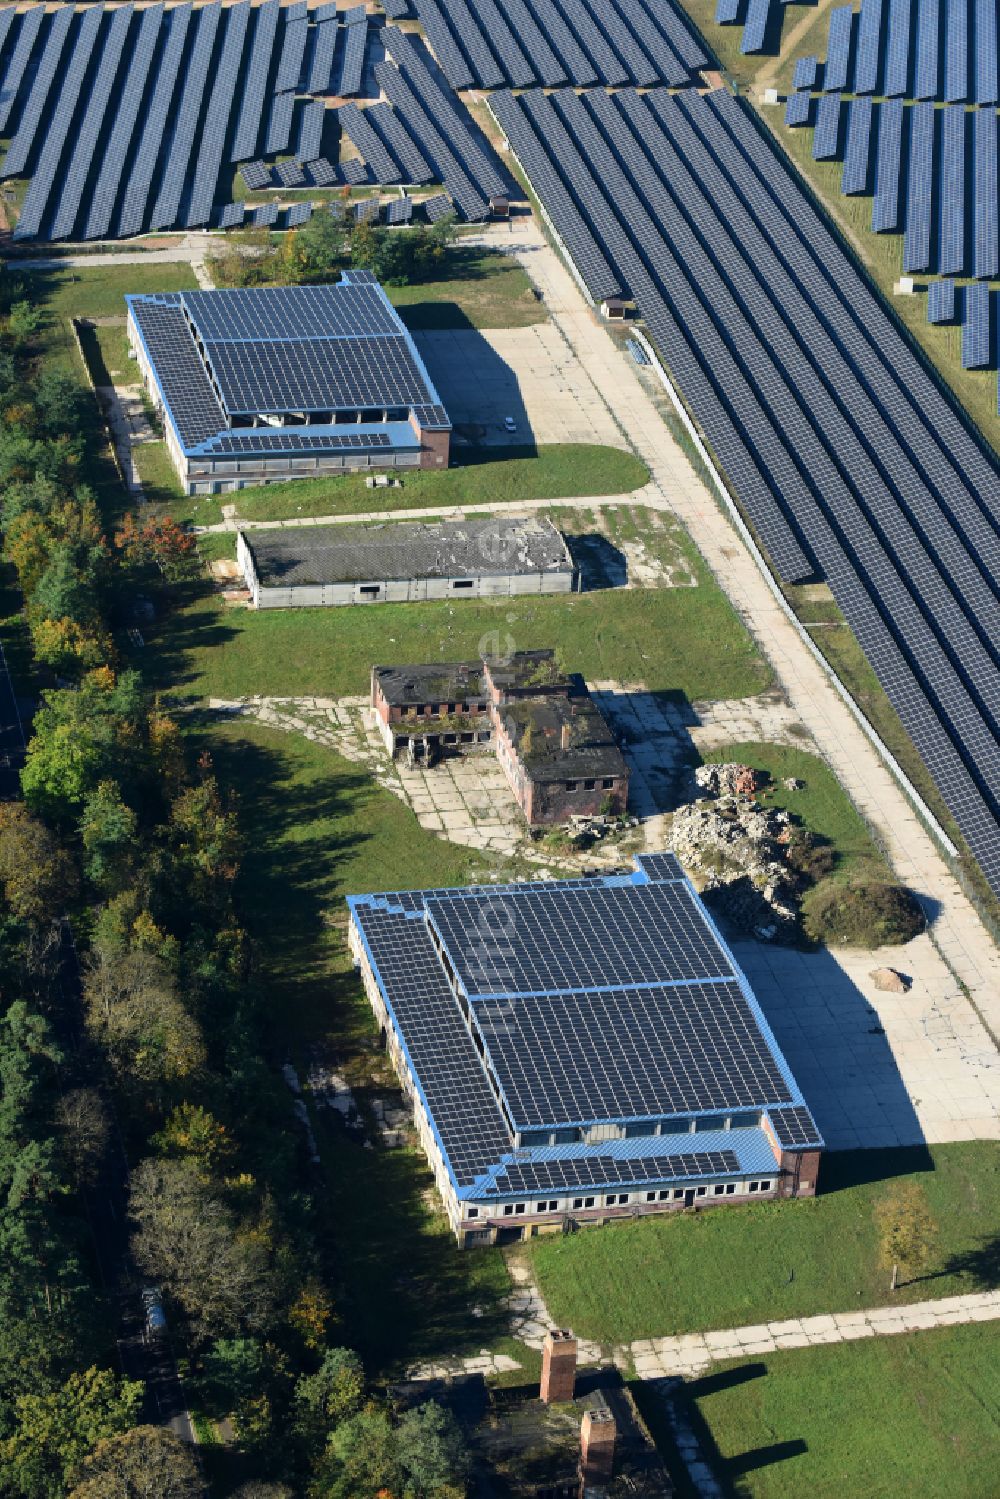 Luftbild Fürstenwalde/Spree - Solarkraftwerk und Photovoltaik- Anlagen auf dem ehemaligen Flugplatz in Fürstenwalde/Spree im Bundesland Brandenburg, Deutschland